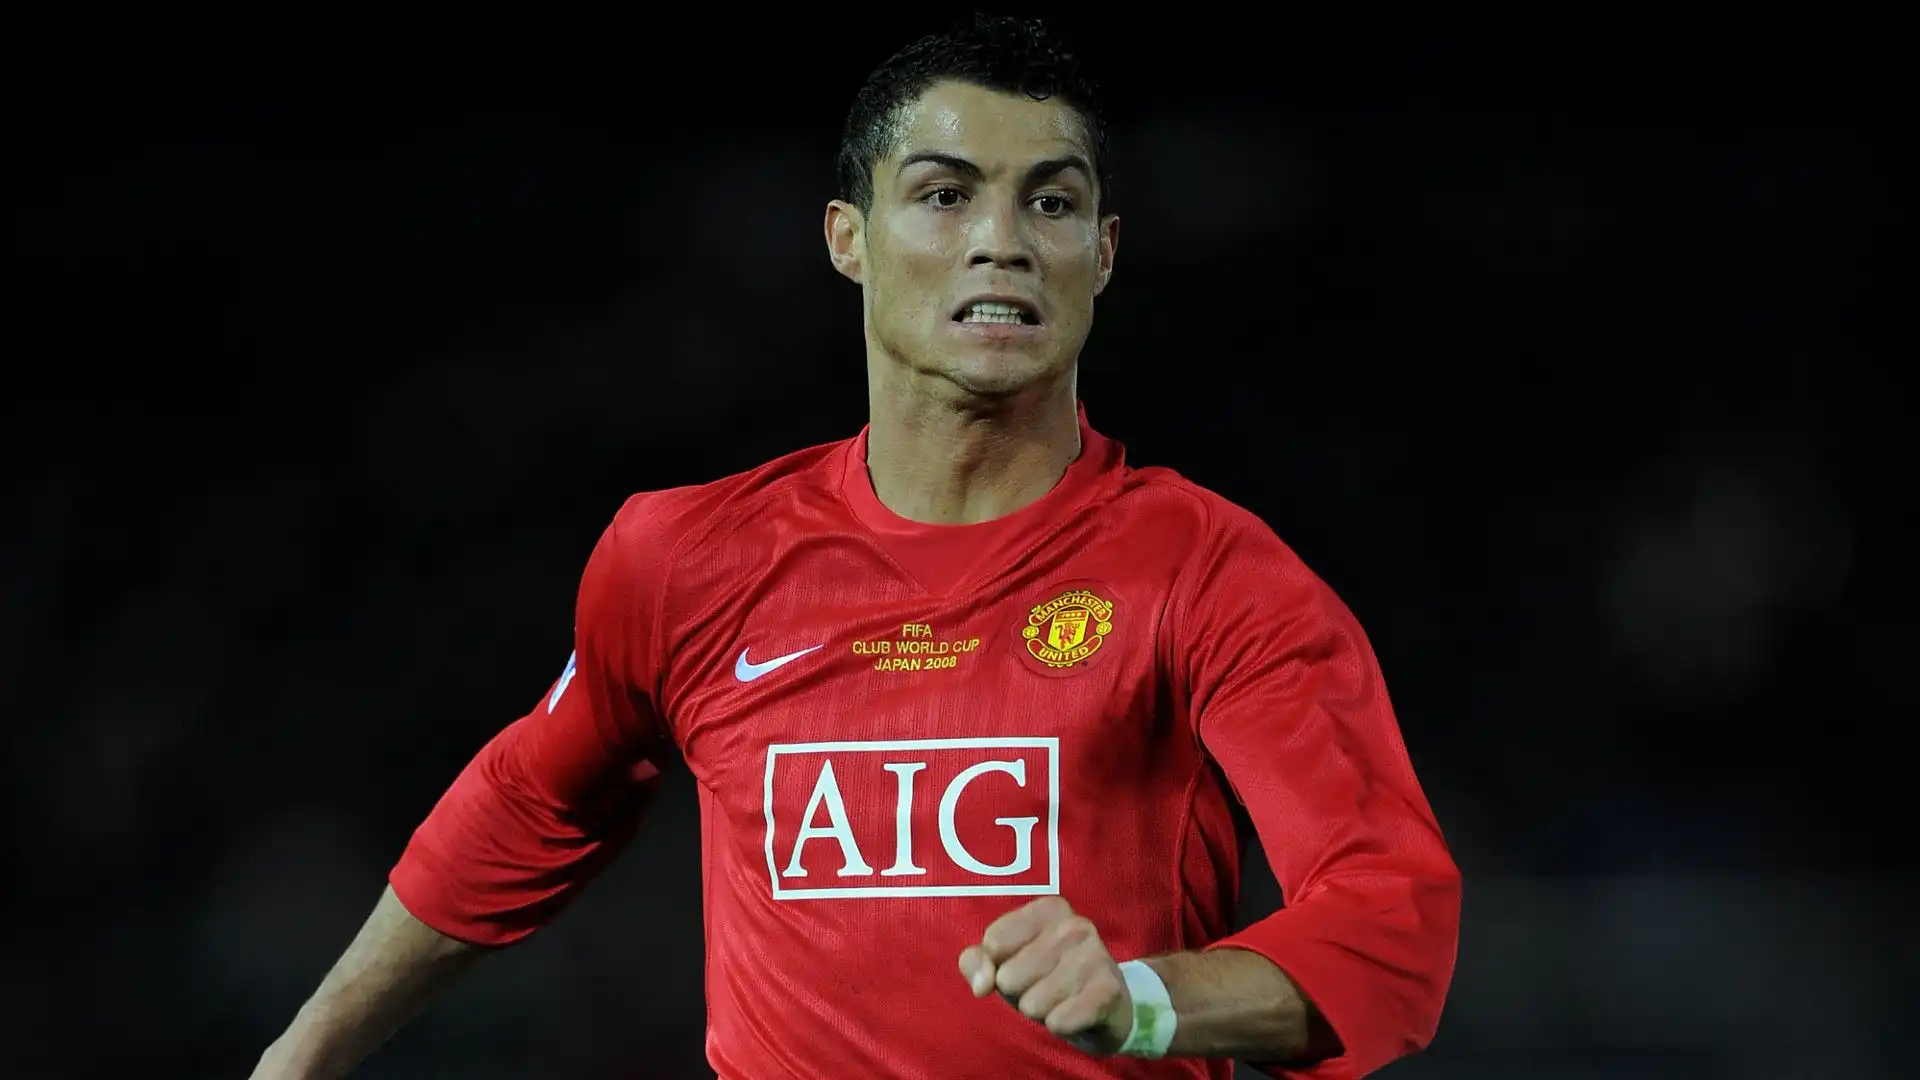 Cristiano Ronaldo (Manchester United)